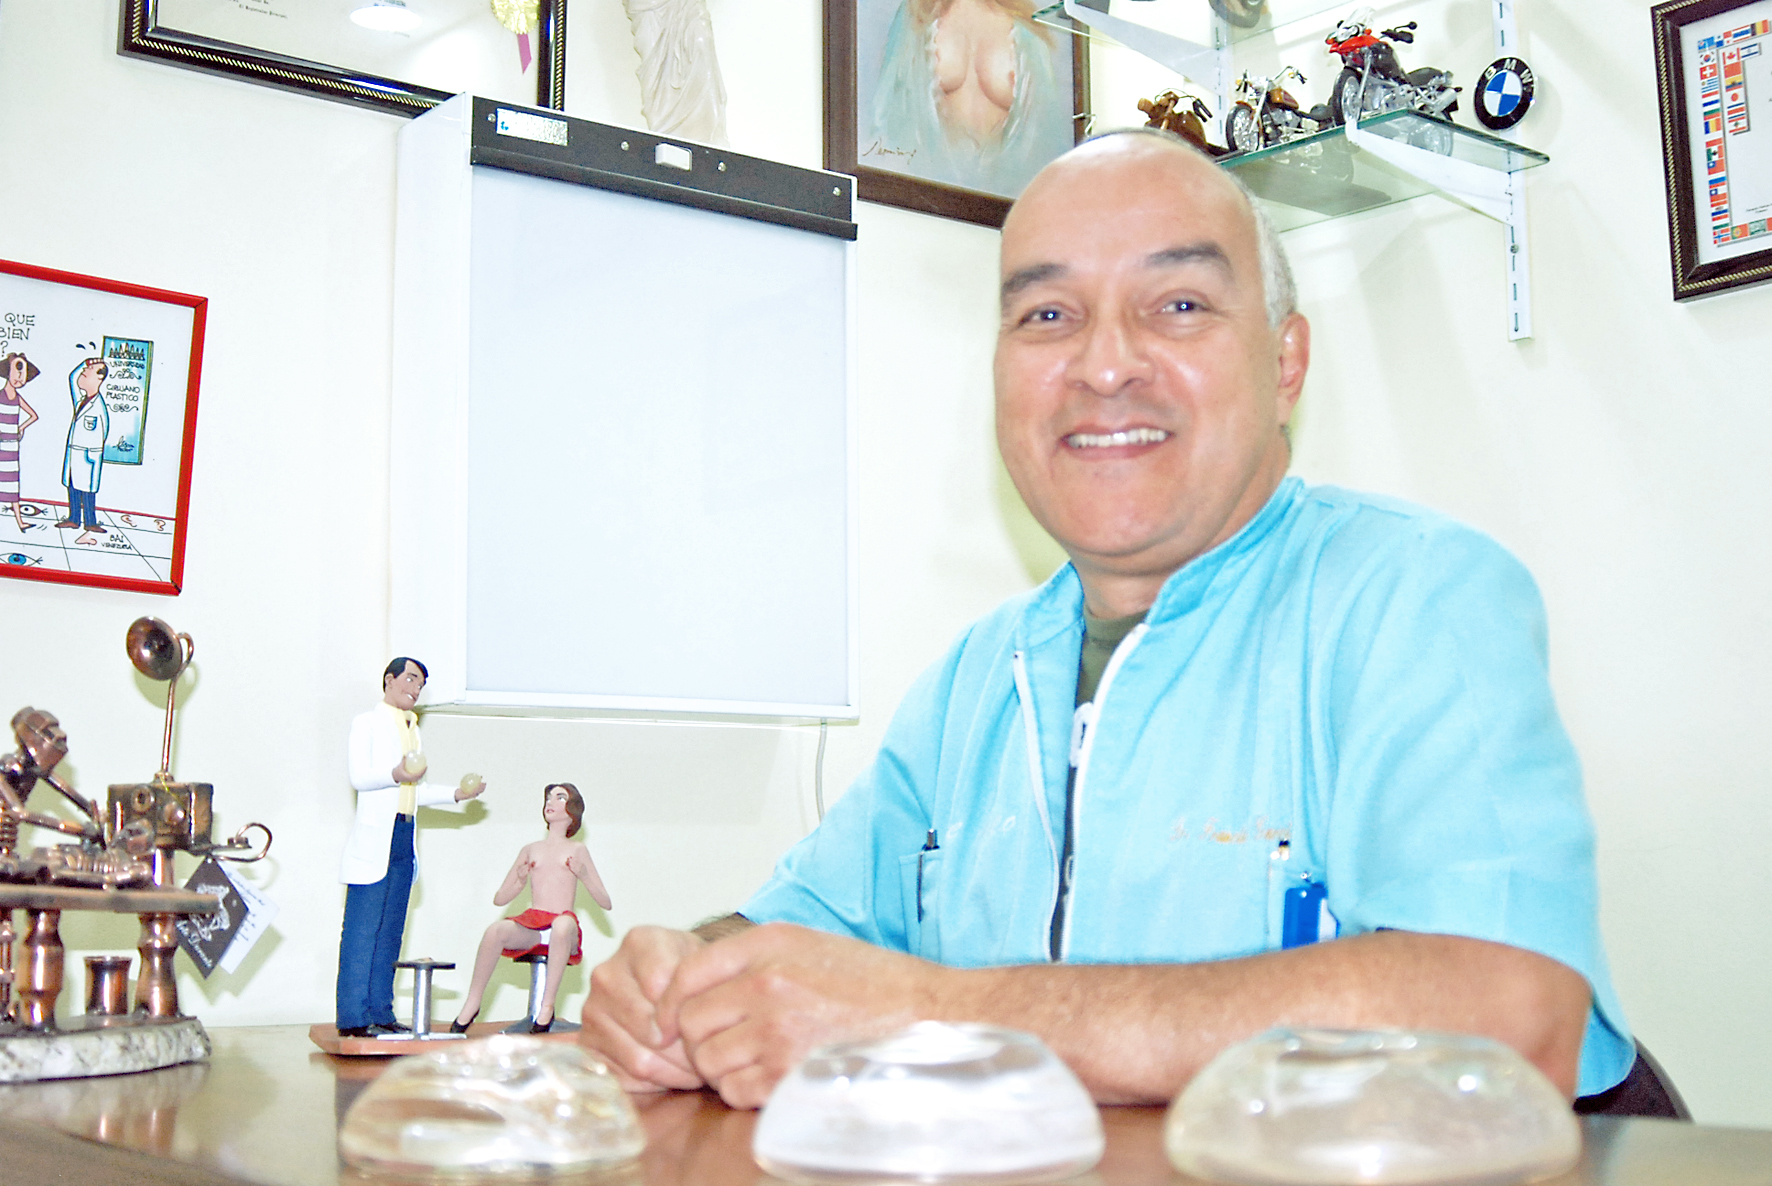 Gente valiosa: Francisco García, un doctor comprometido con la salud y belleza femenina